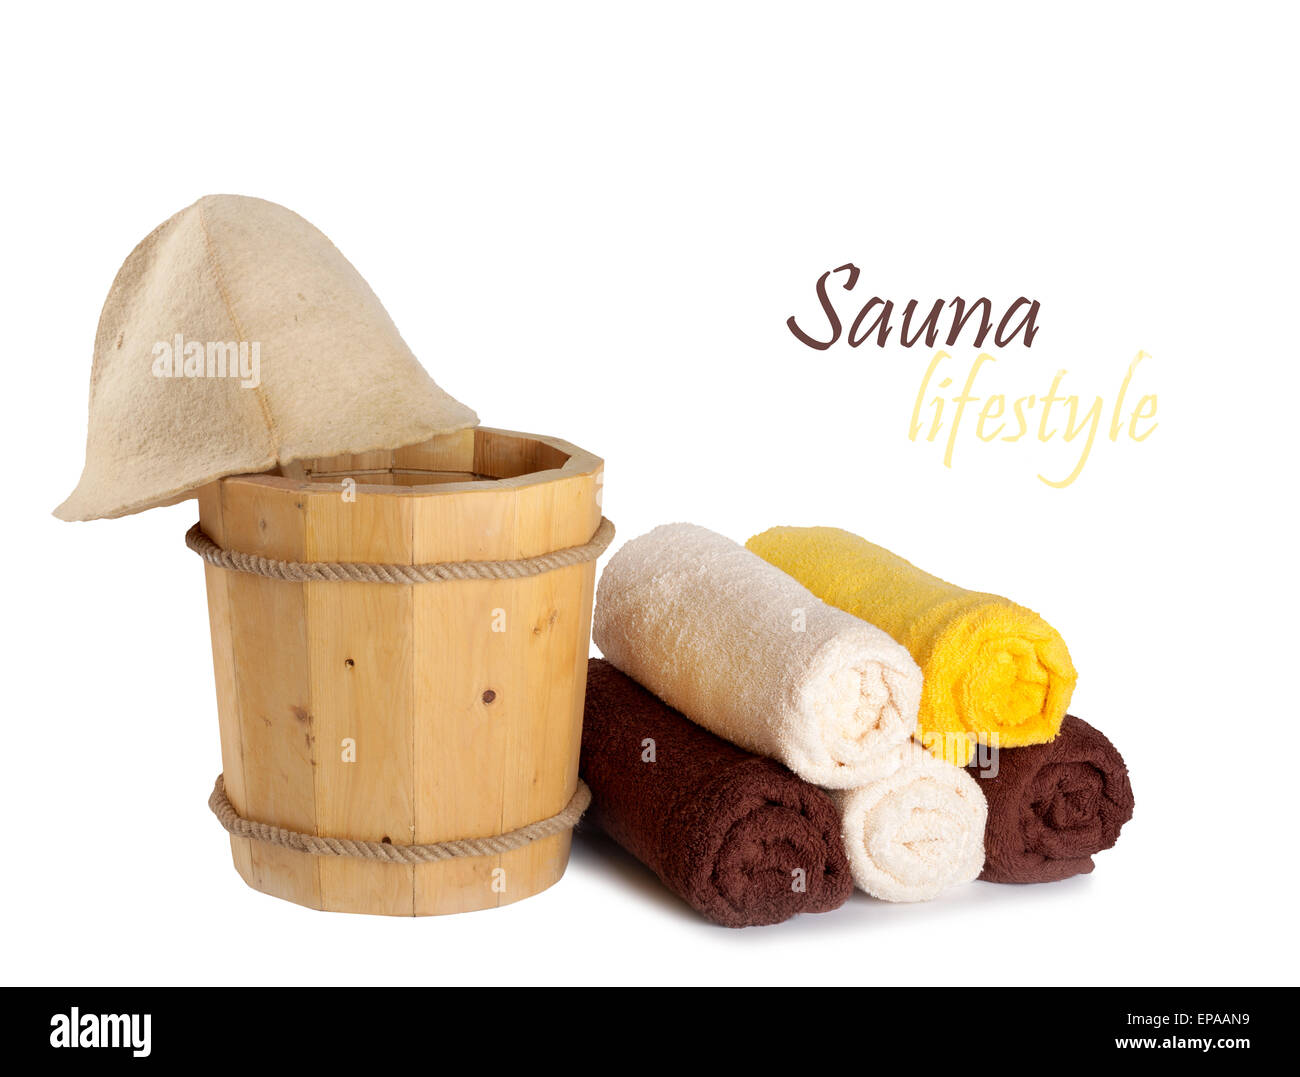 Cucchiaio di legno con siviera per la sauna e la pila di asciugamani puliti Foto Stock